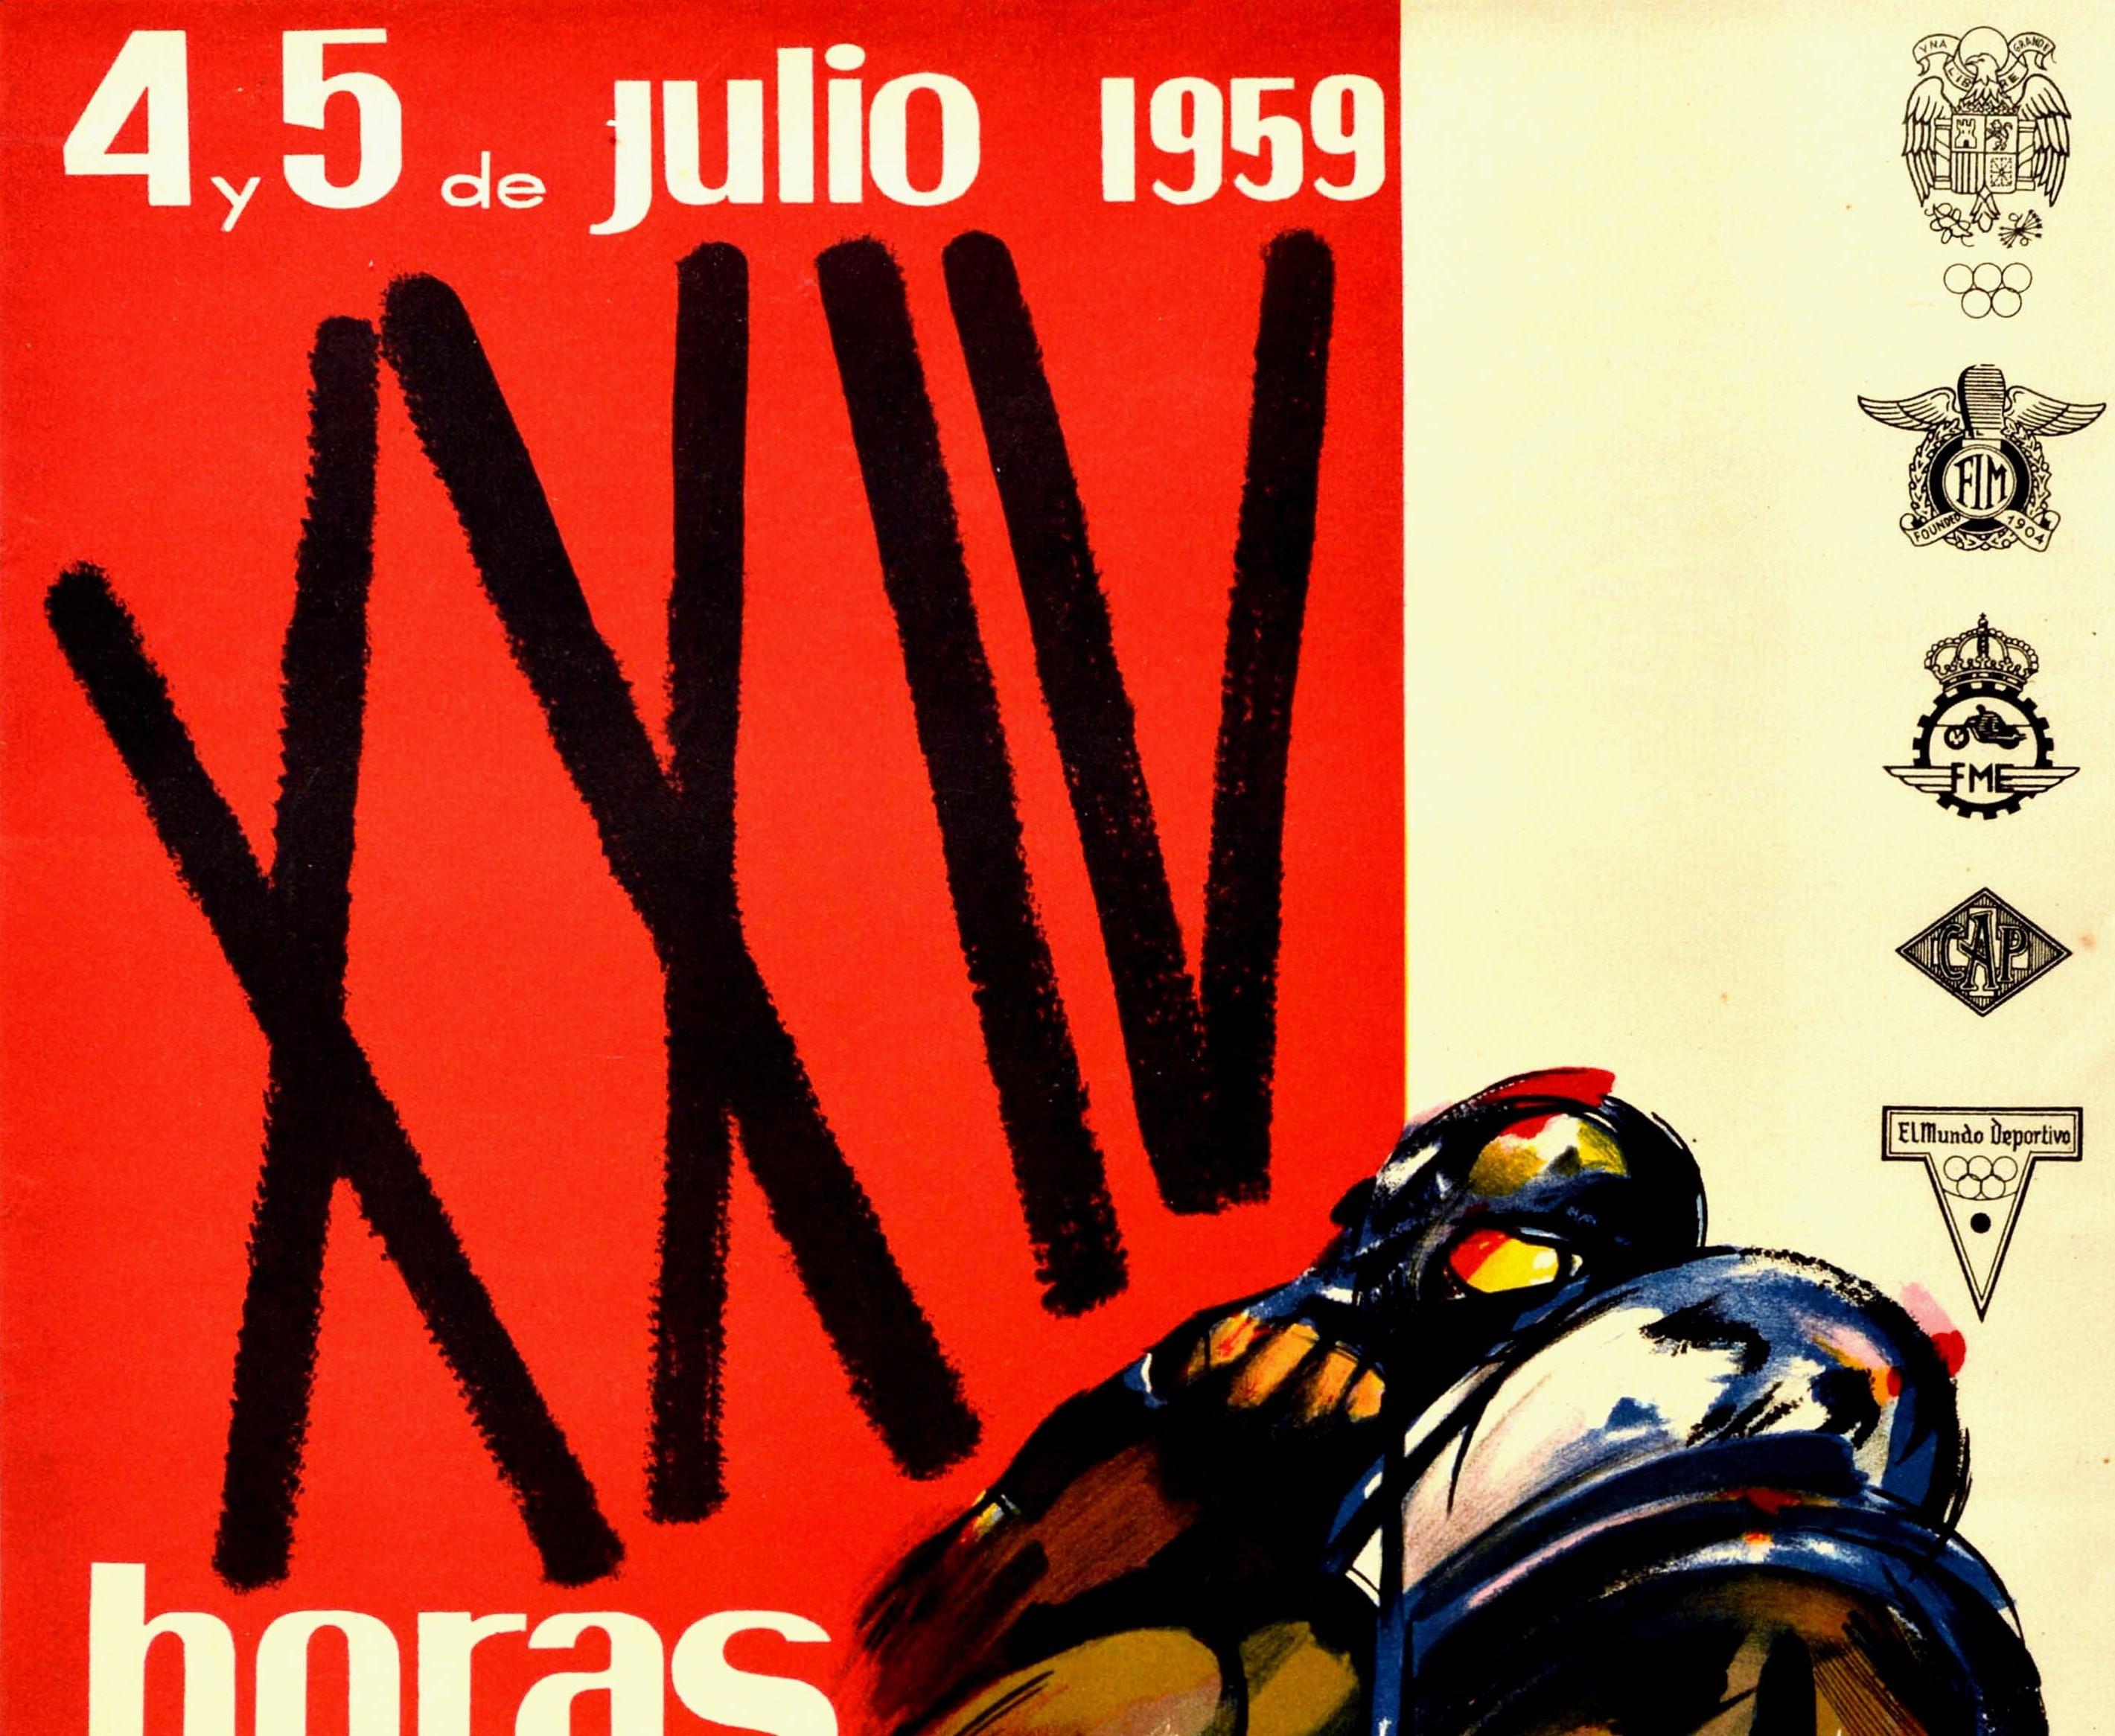 Affiche originale de sport automobile vintage pour les XXIV Horas Internacionales de Montjuich 4 et 5 juillet 1959 Pena Motorista Barcelona FIM FME PMB Pirelli / 24 Hour International Montjuic organisée par le club de moto de Barcelone. Le dessin